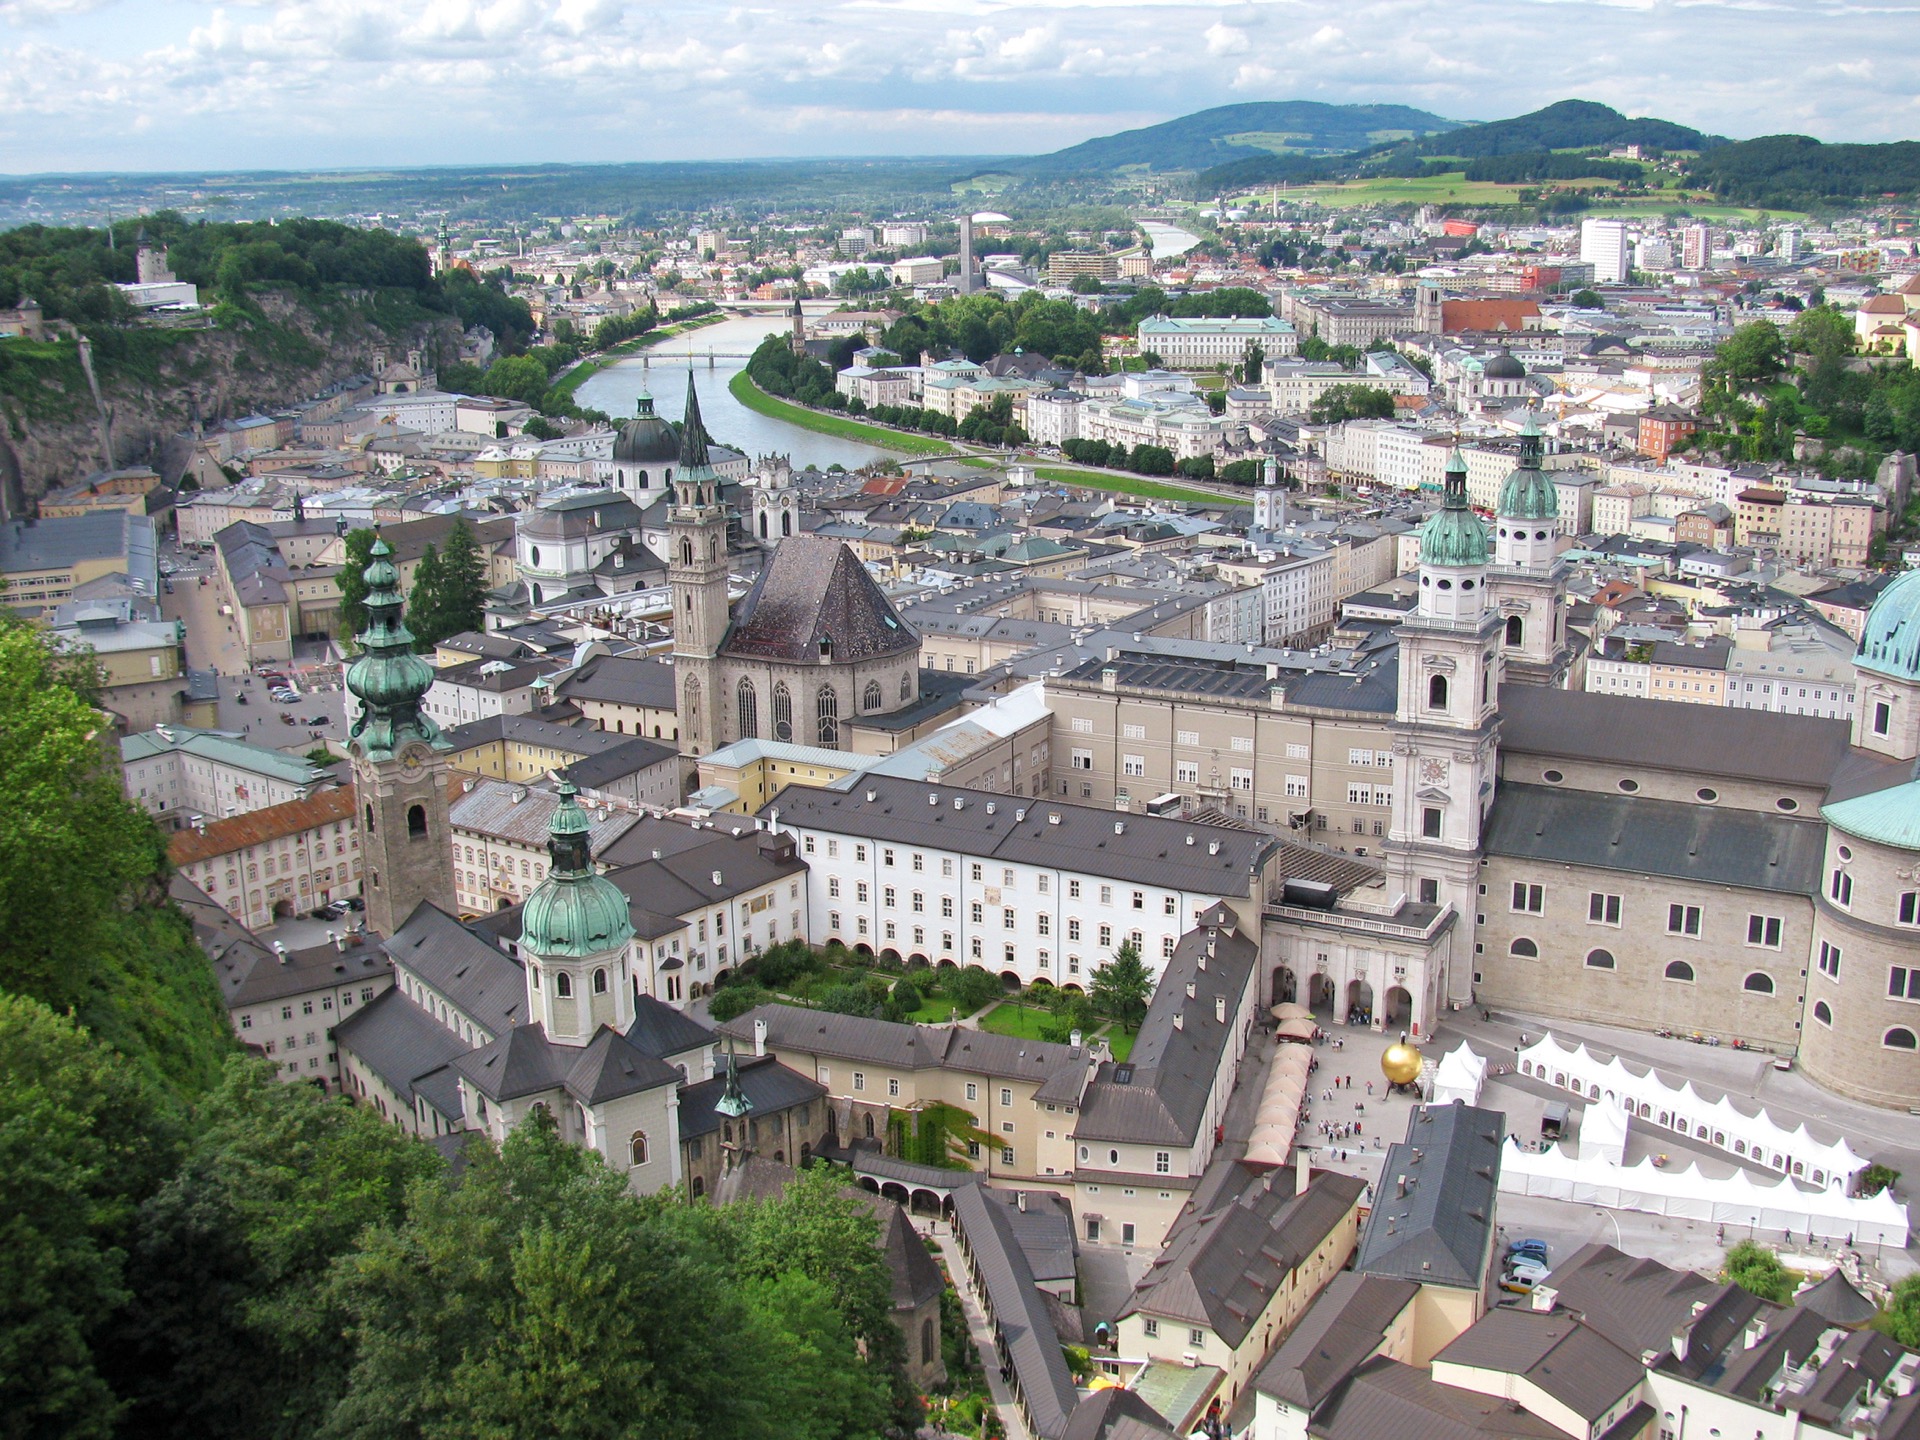 Übergeordnete Einflüsse auf die Stadtentwicklung Salzburgs